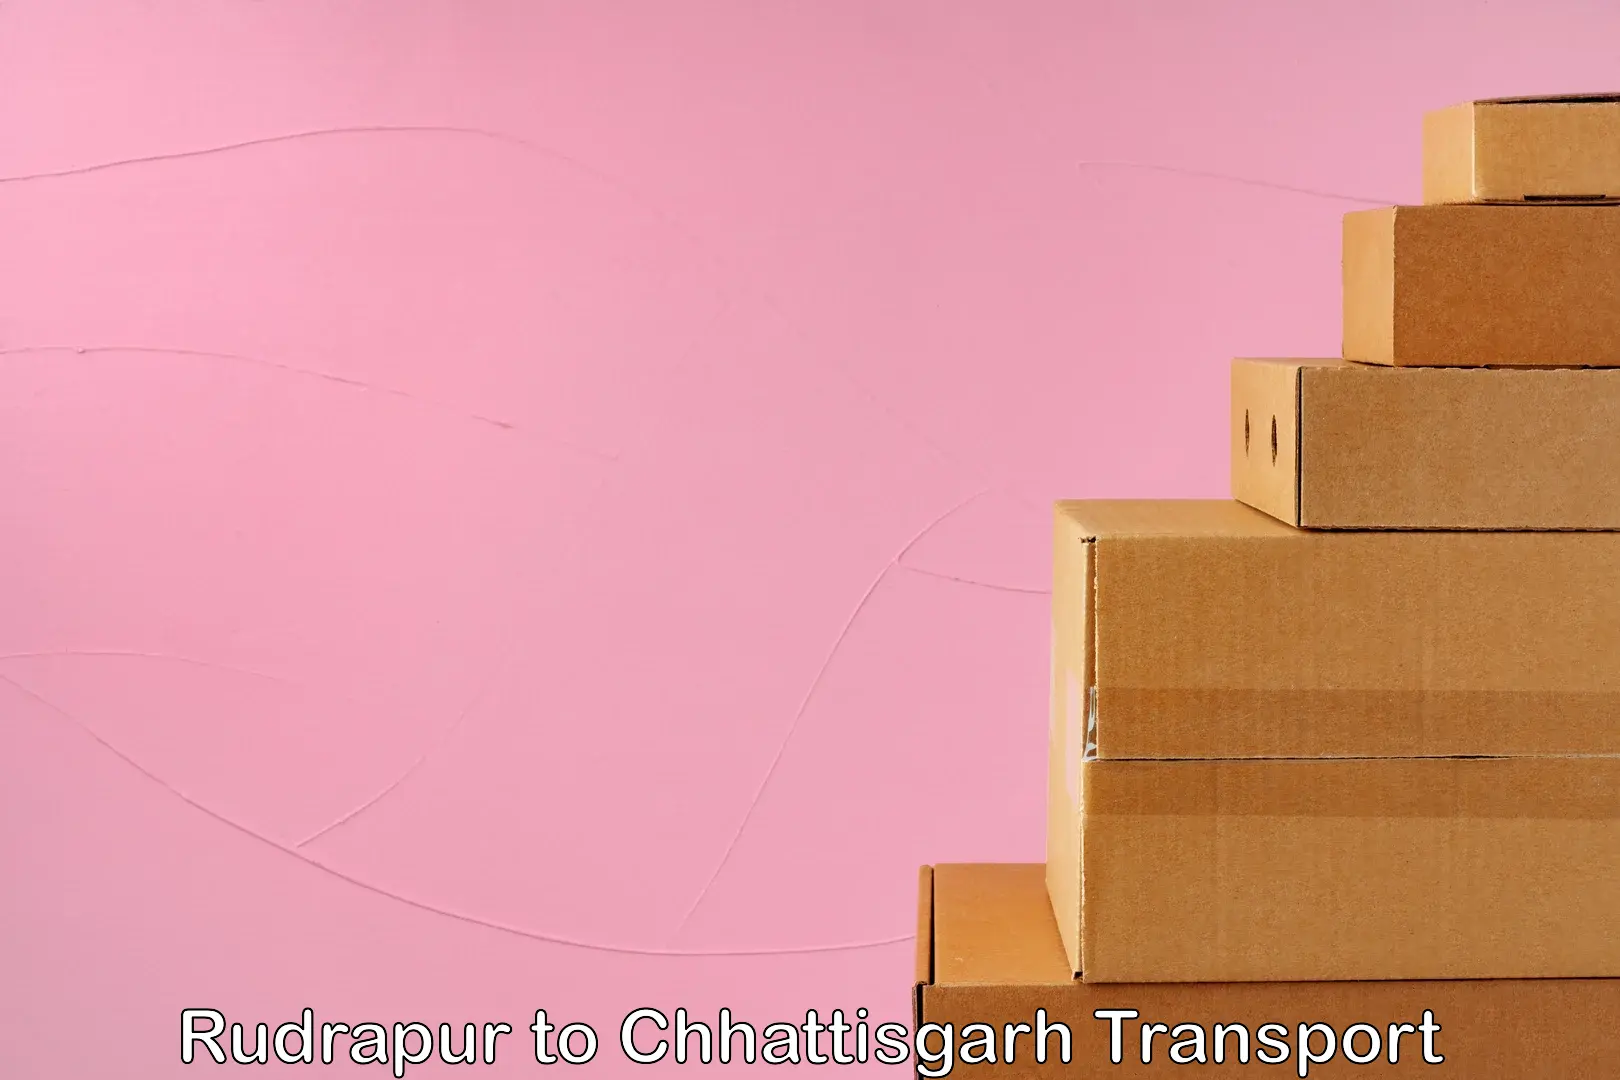 Goods delivery service Rudrapur to Chhattisgarh